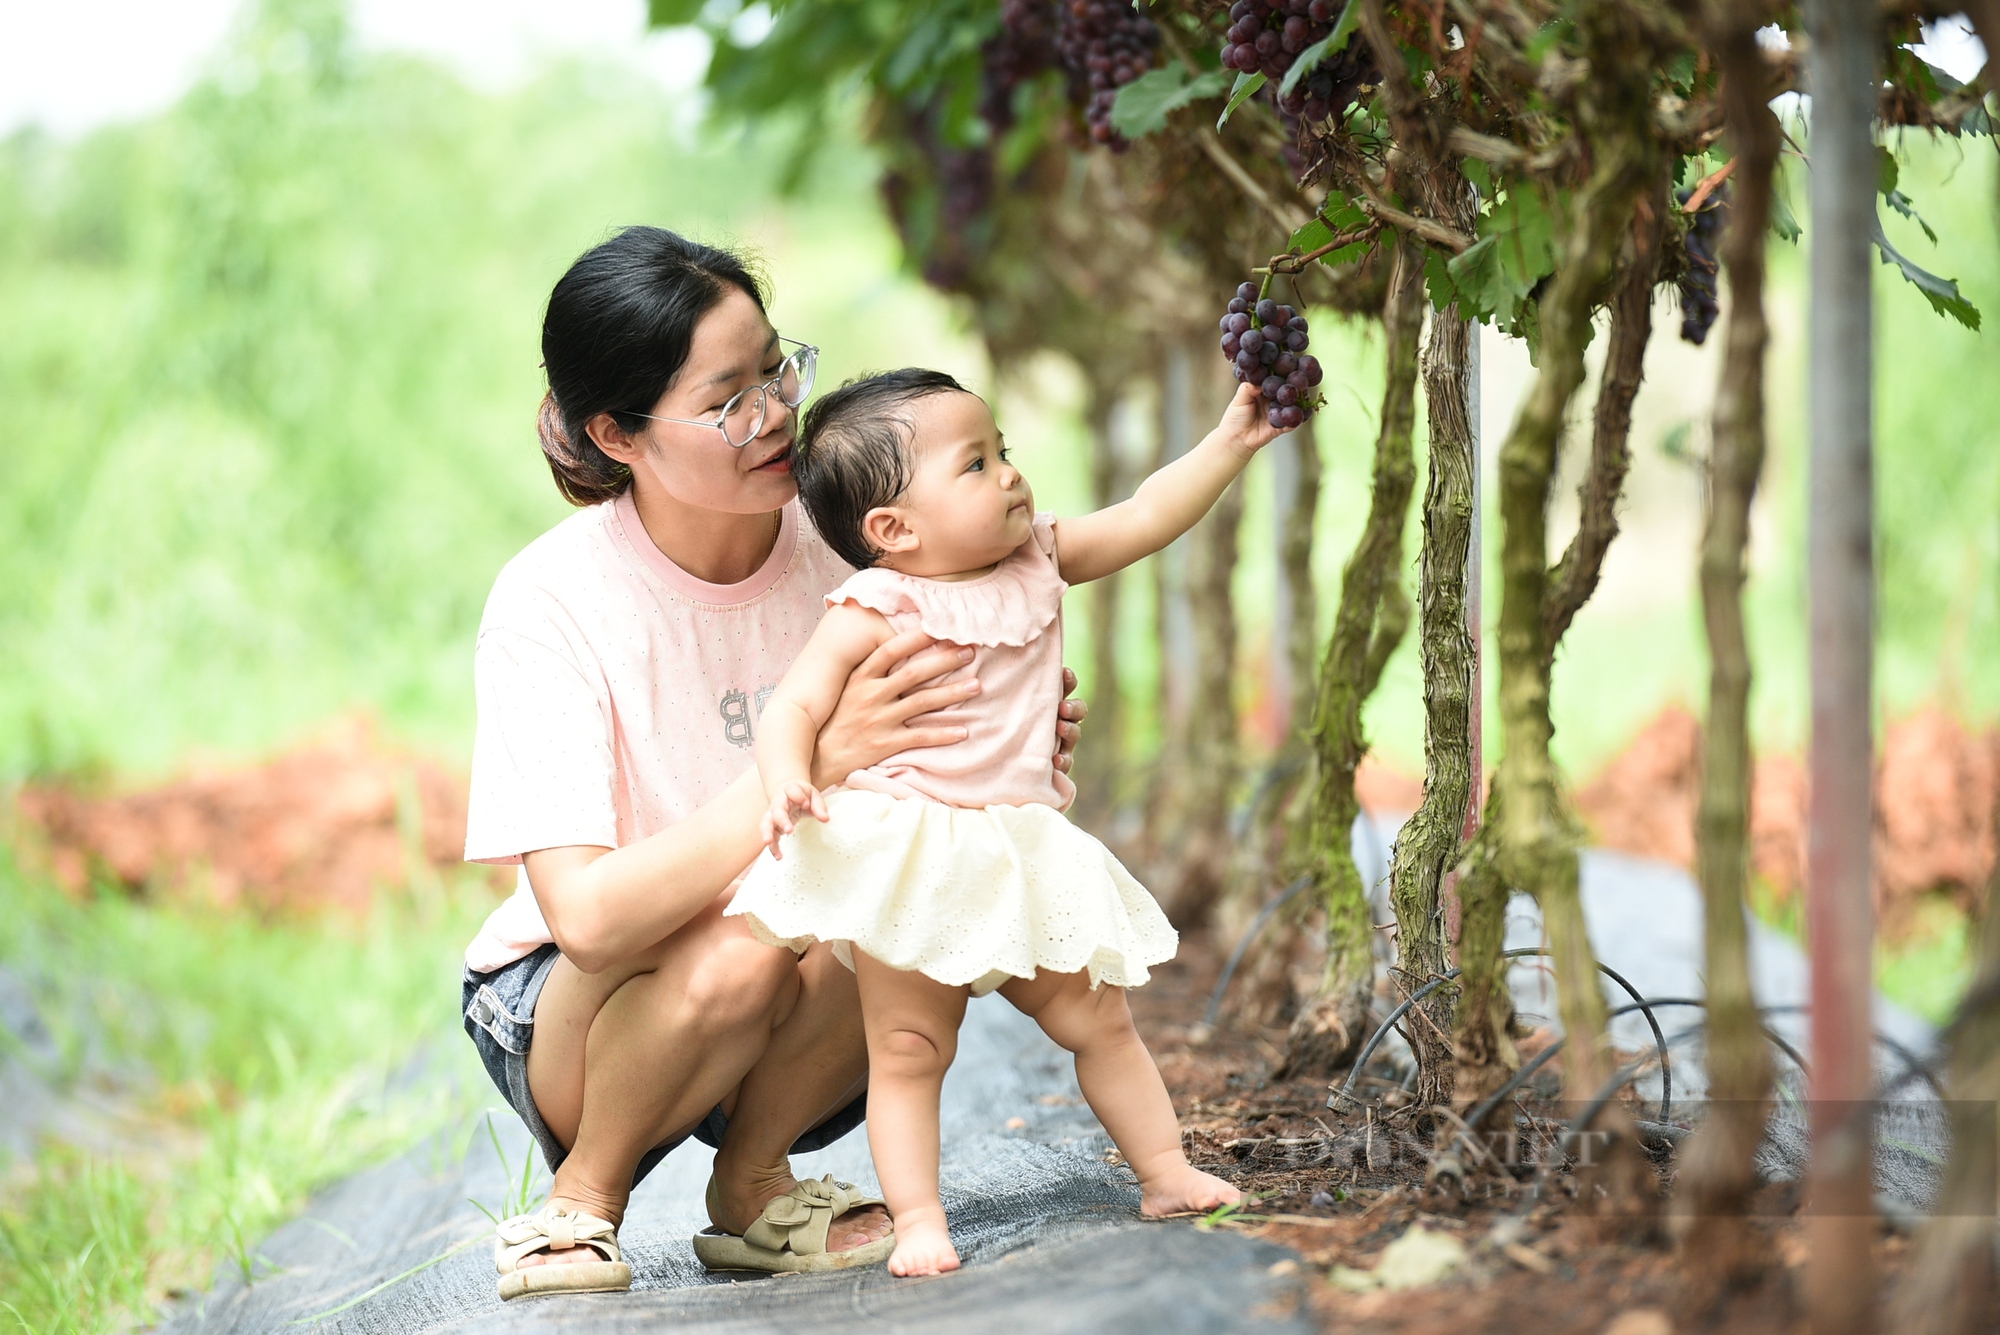 Vườn nho hạ đen trĩu quả ở ngoại thành Hà Nội thu hút người dân đến check-in mỗi ngày- Ảnh 7.